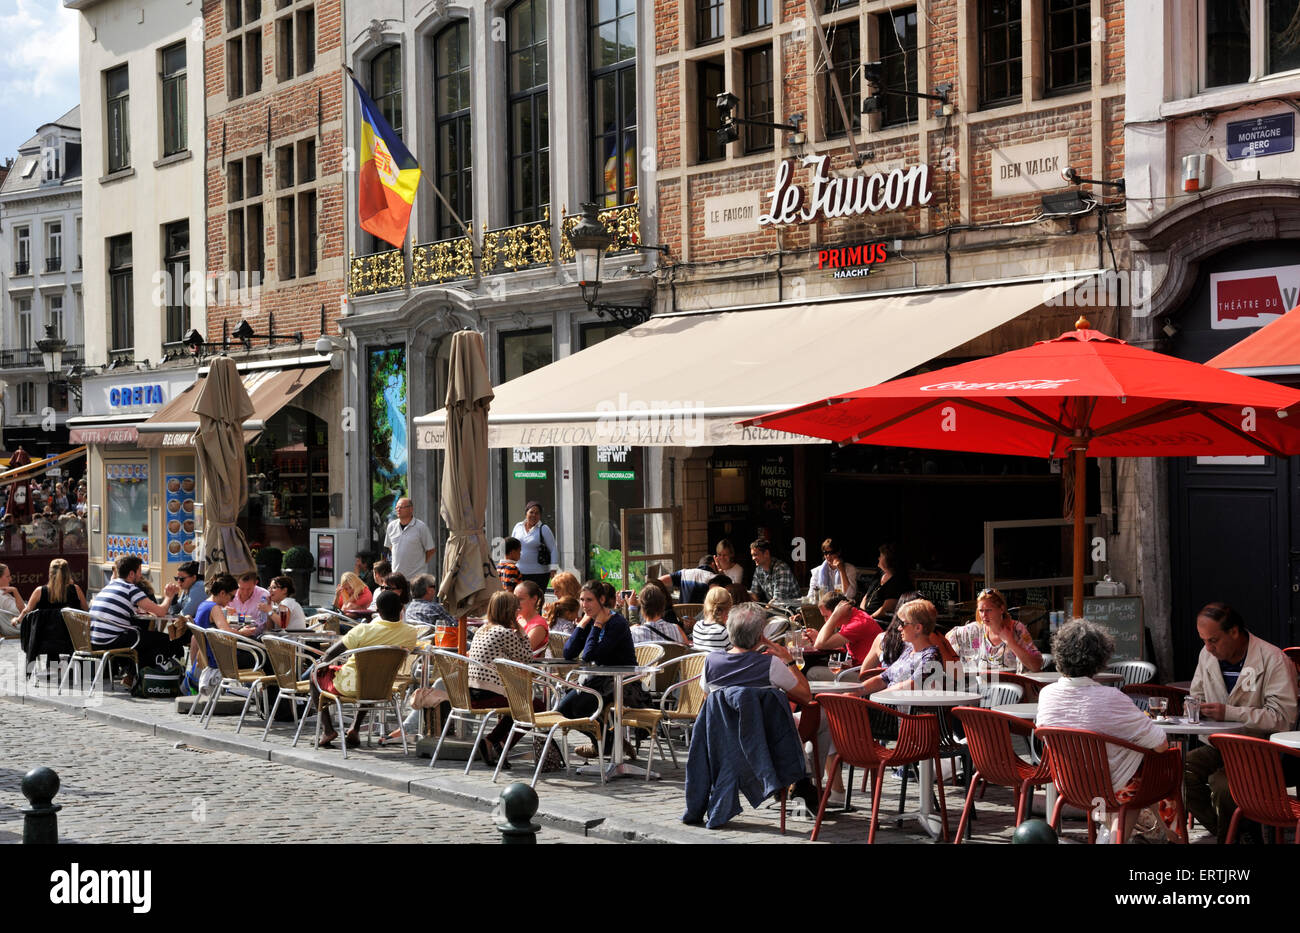 Belgique, Bruxelles, rue de la montagne, outdoor cafe Banque D'Images